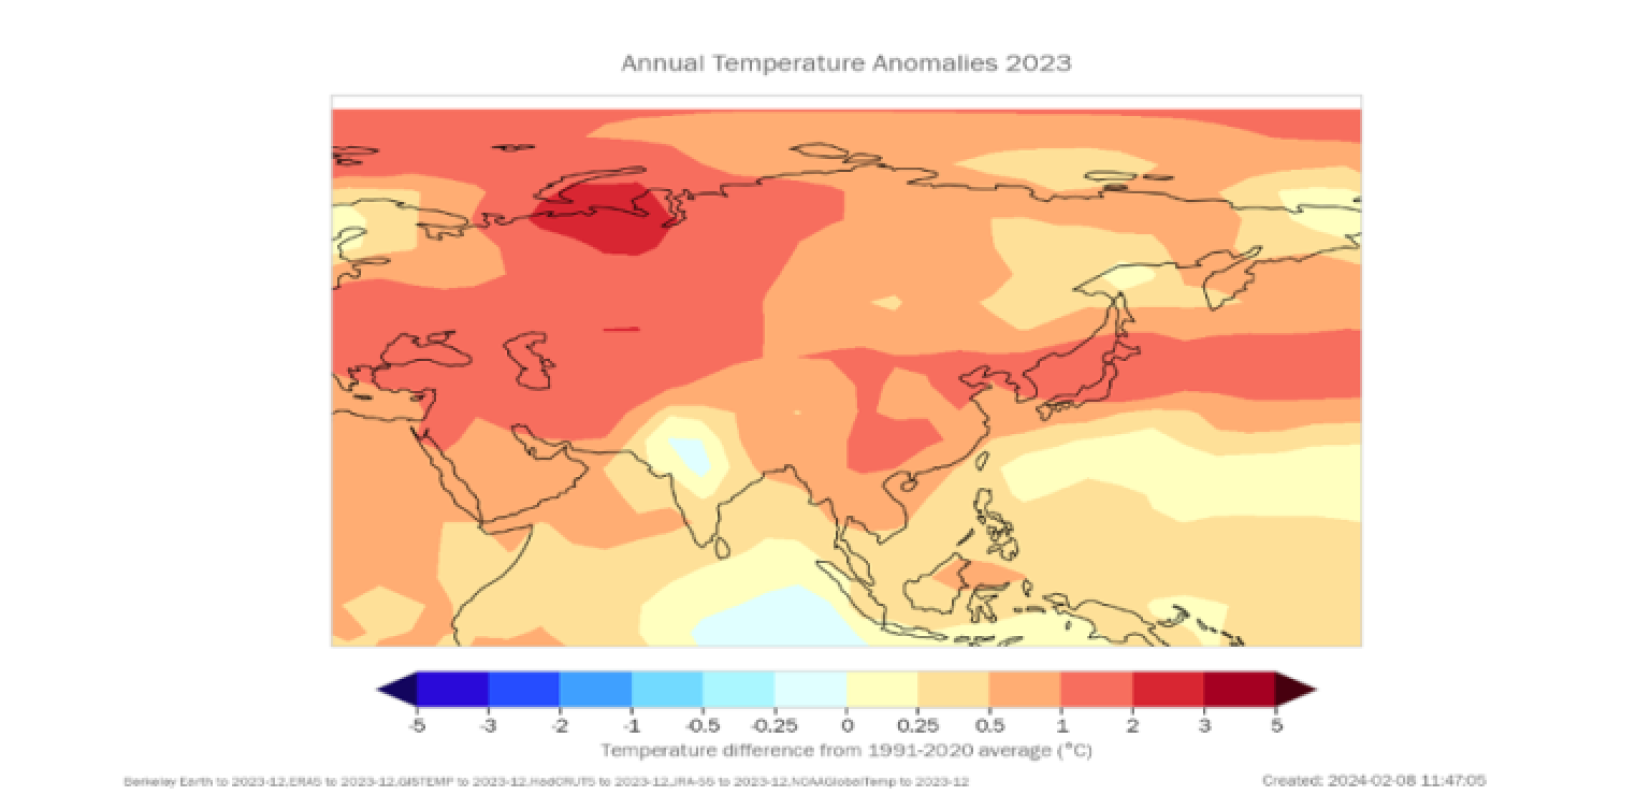 Annual Temperature Anomalies 2023